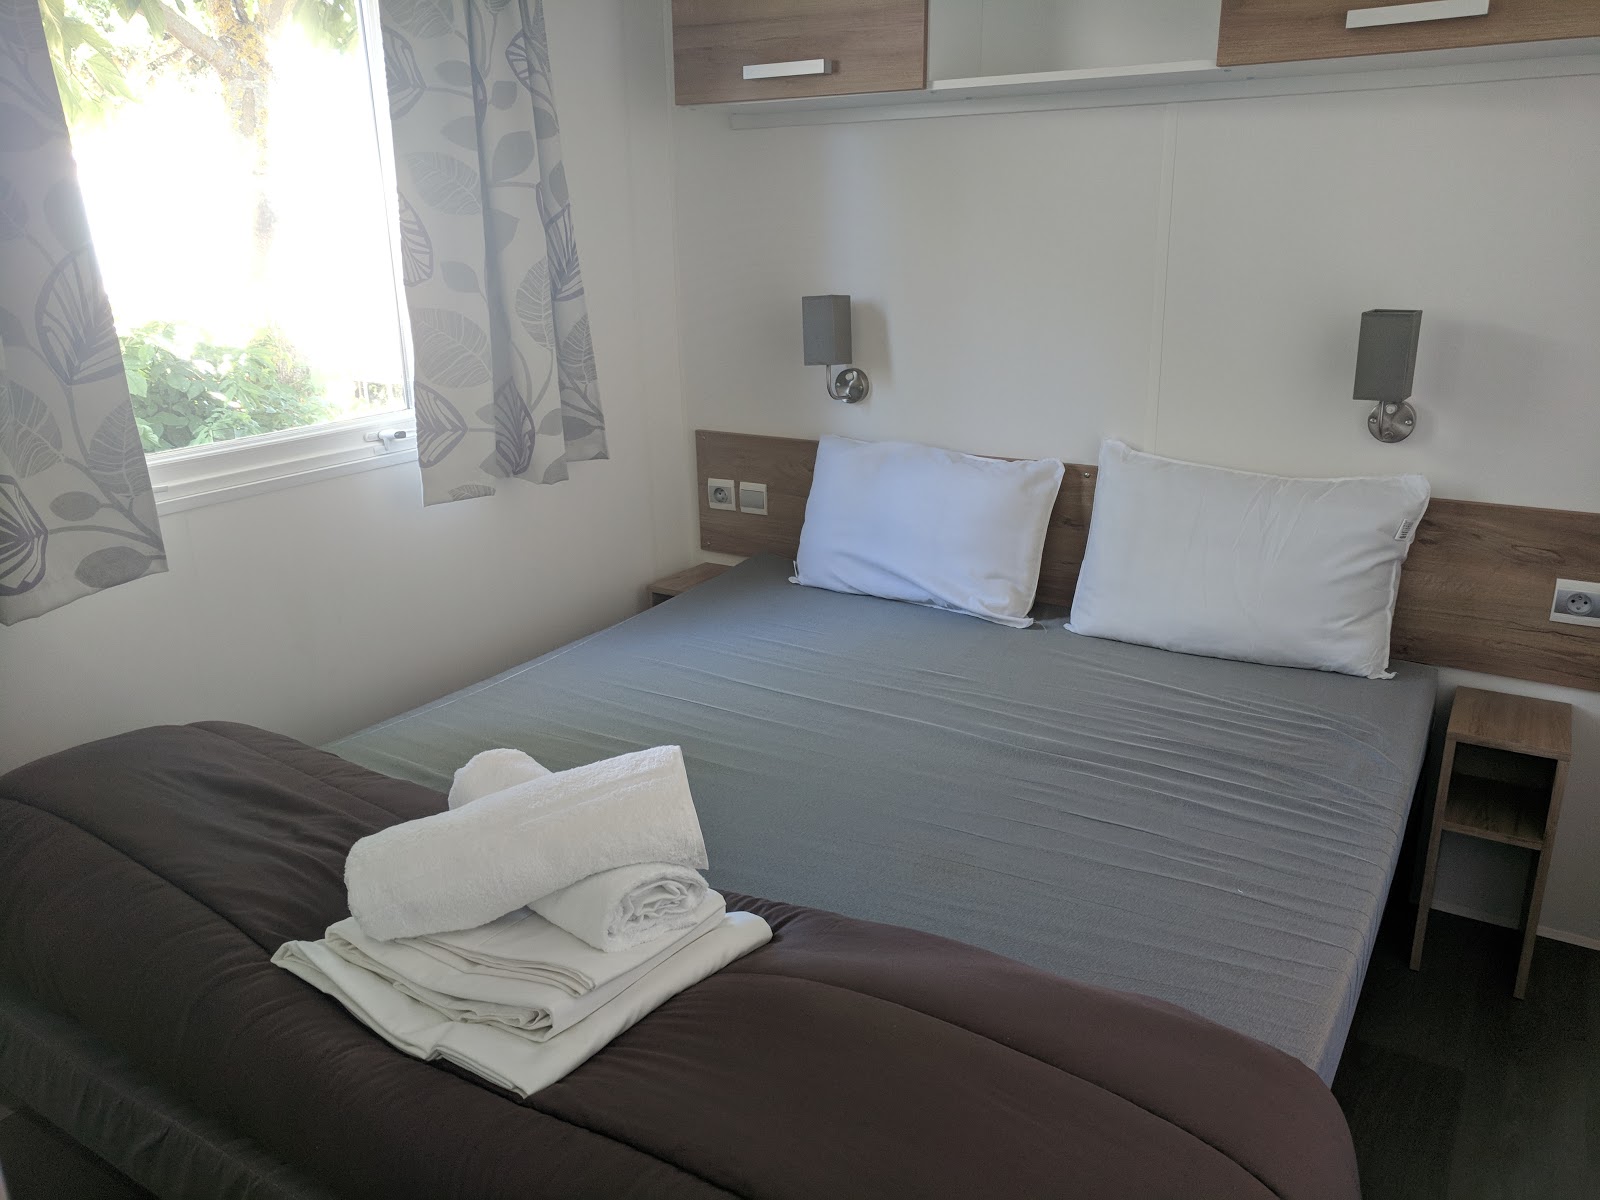 Les Ecureuils Campsite, Vendee - A Eurocamp Site near Puy du Fou (Full Review) - avant lodge double bedroom